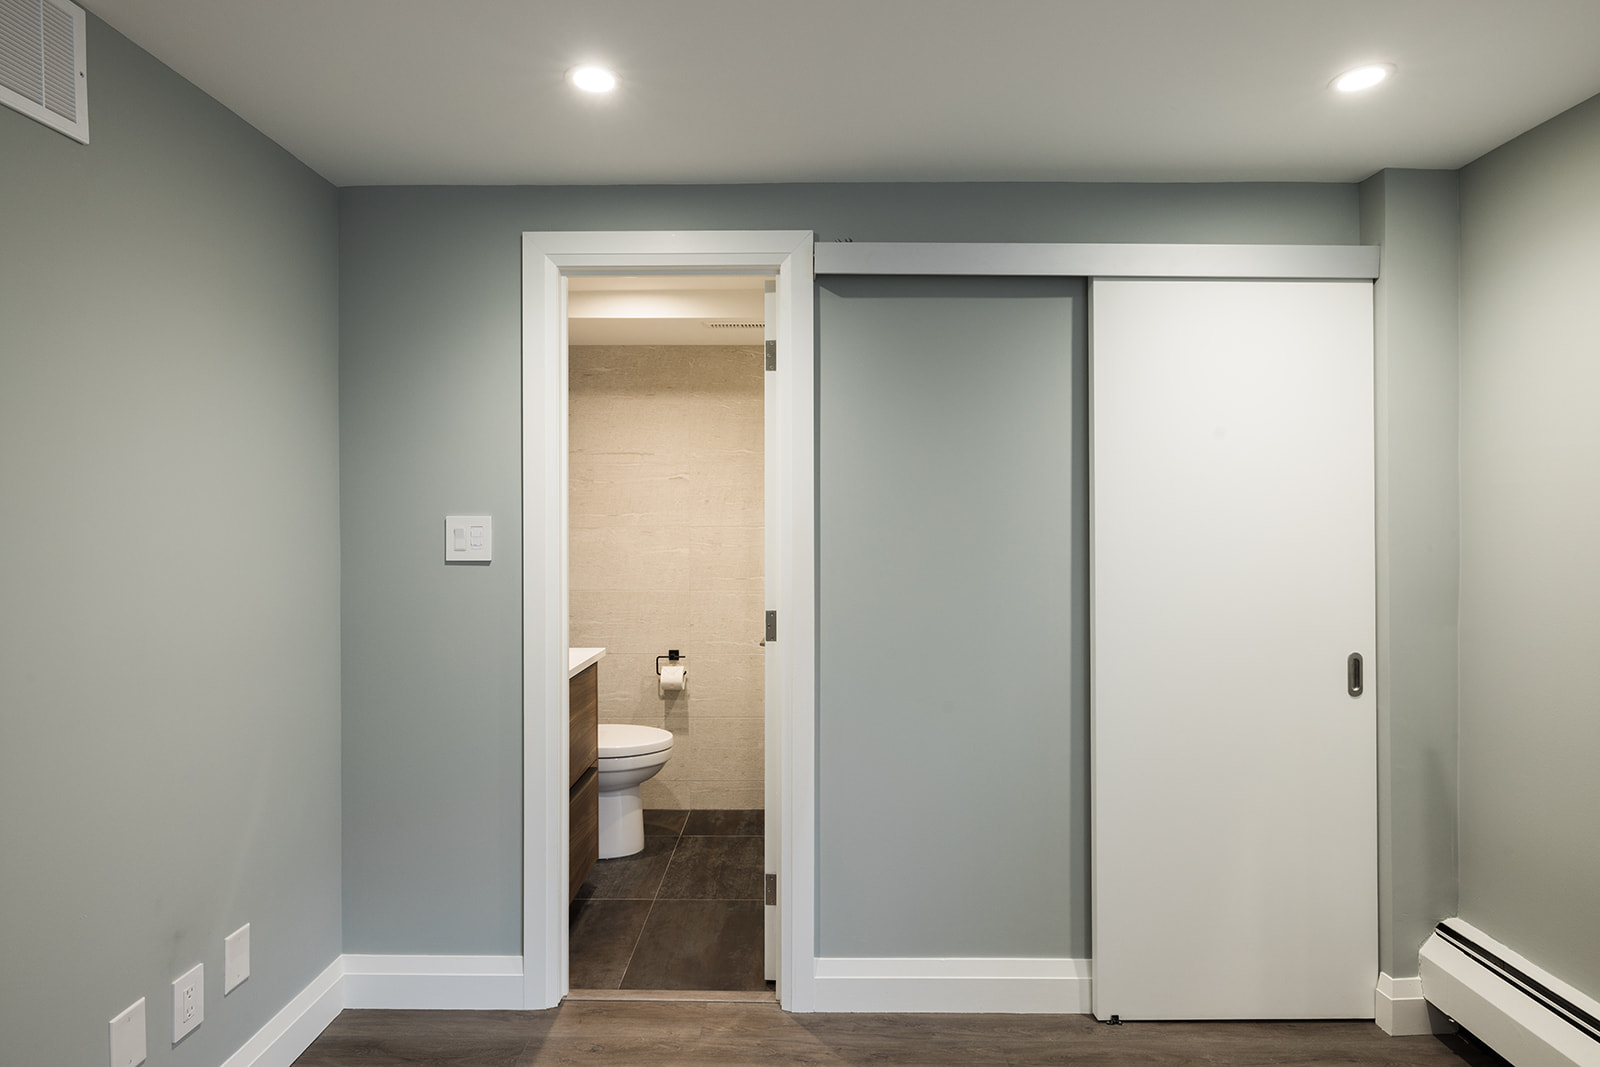 Luxury full condo renovation in downtown Toronto with door open to bathroom